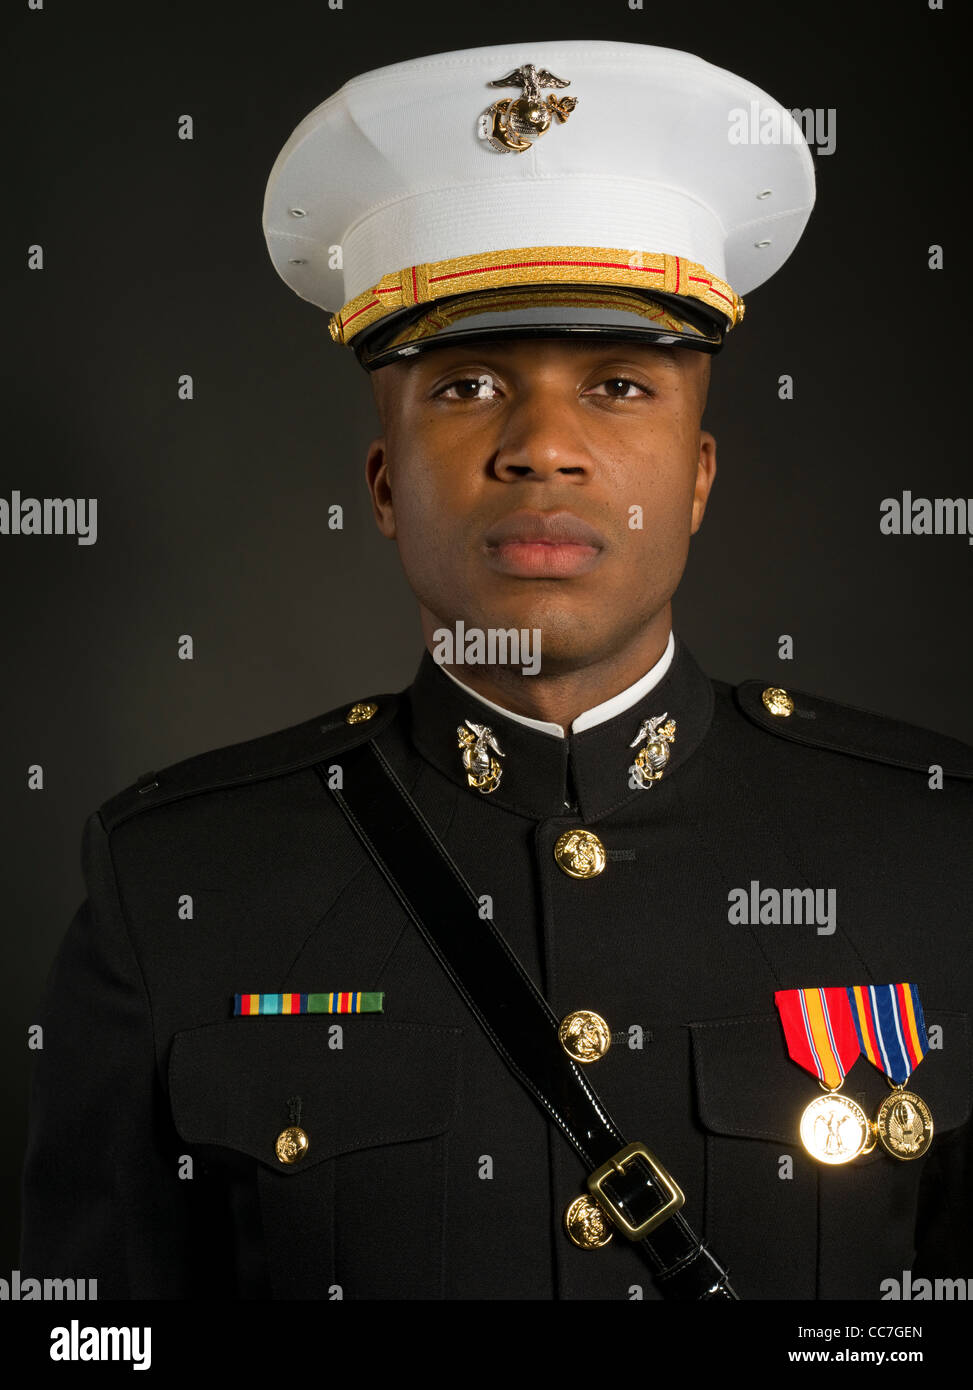 United States Marine Corps Uniform 72